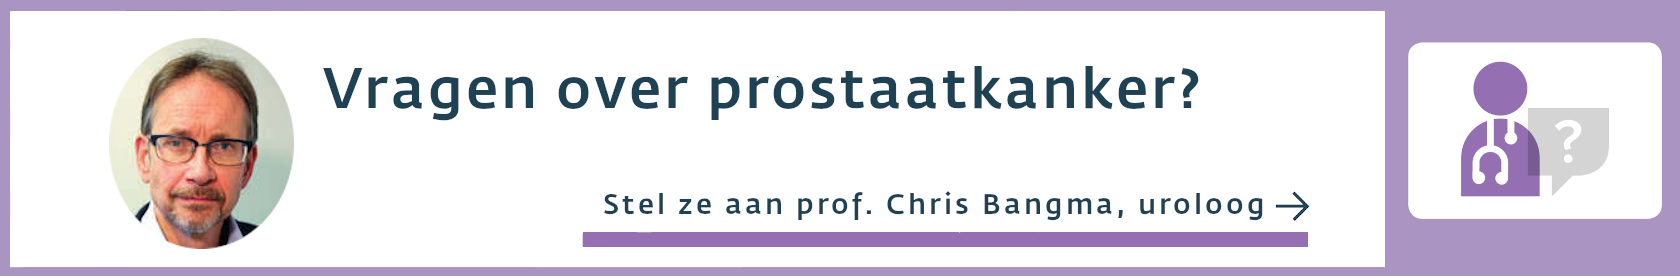 Vragen prostaatkanker kanker.nl